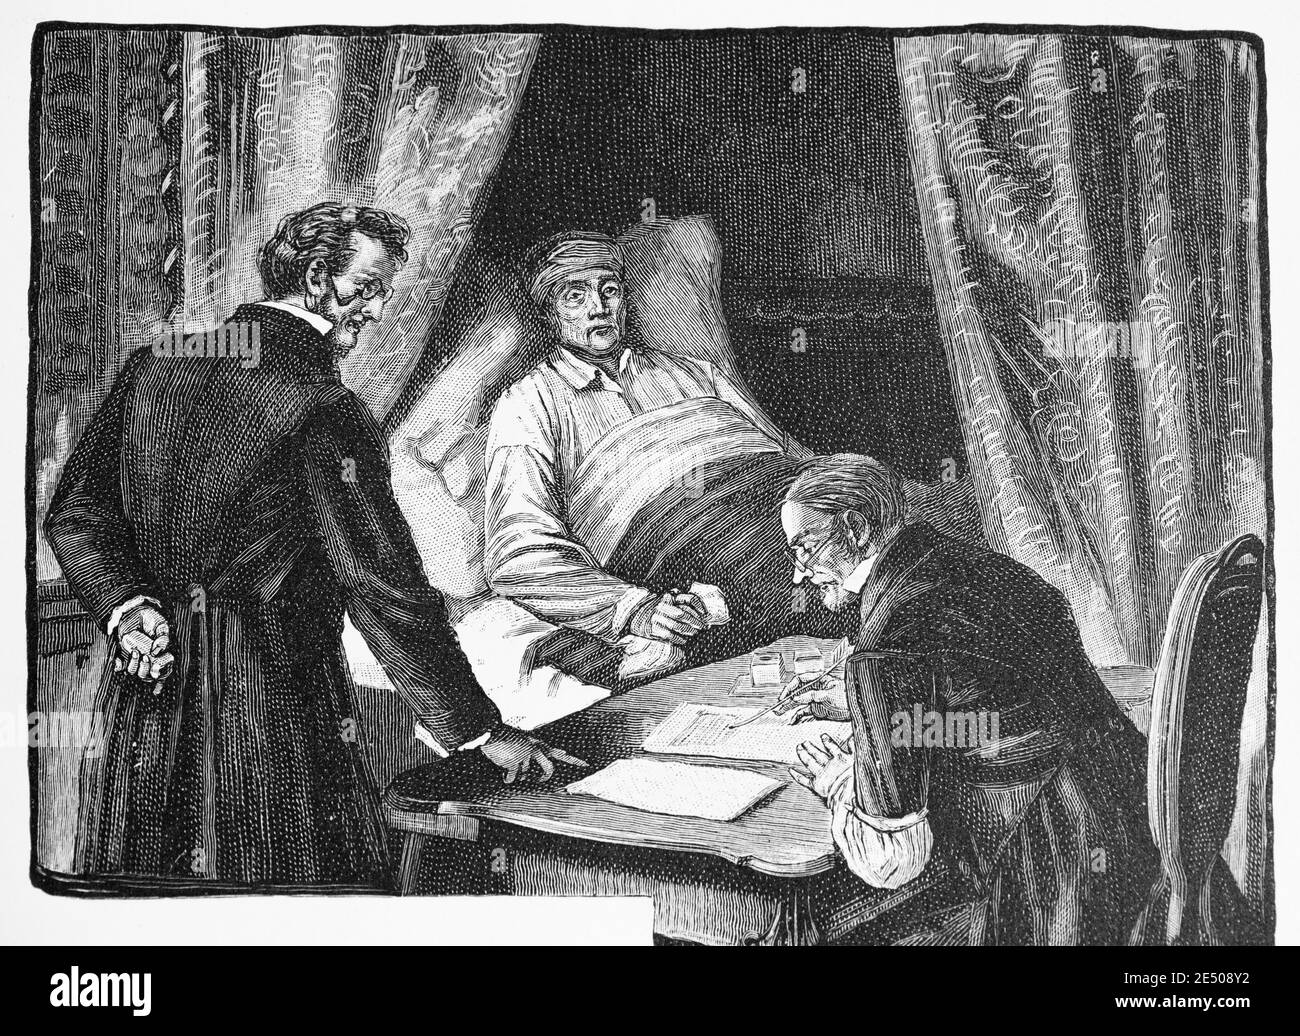 Illustrazione al poema di Heine´s 'Der Philanthrop' o un filantropo morente che ha lasciato morire sua sorella, poeta Heinrich Heine, collezione Romancero, 1880 Foto Stock